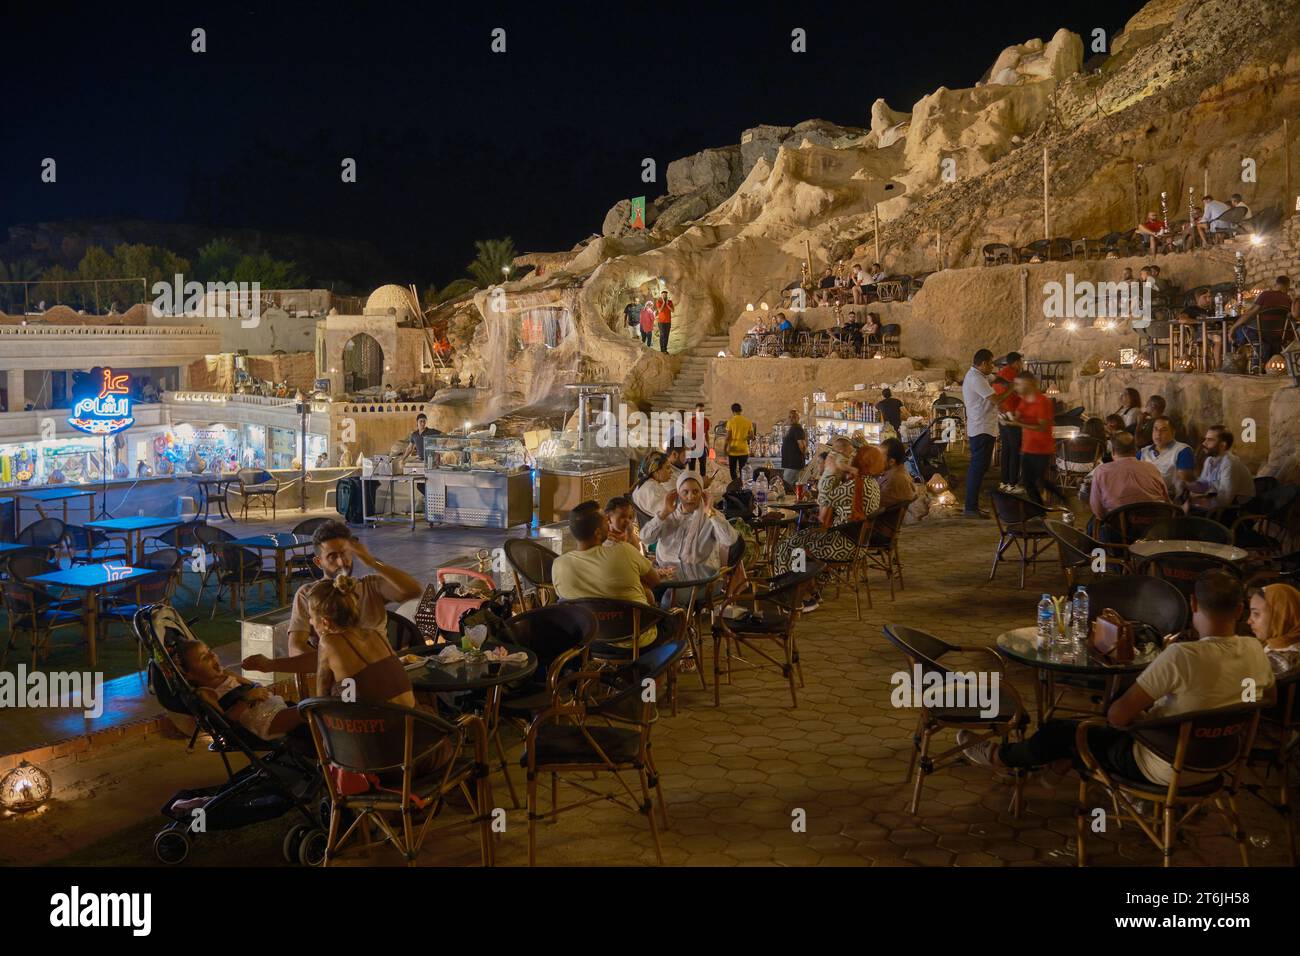 Il vecchio mercato di Sharm El Sheikh, in Egitto, è un mercato tradizionale risalente ai tempi antichi, con vista notturna. Foto Stock